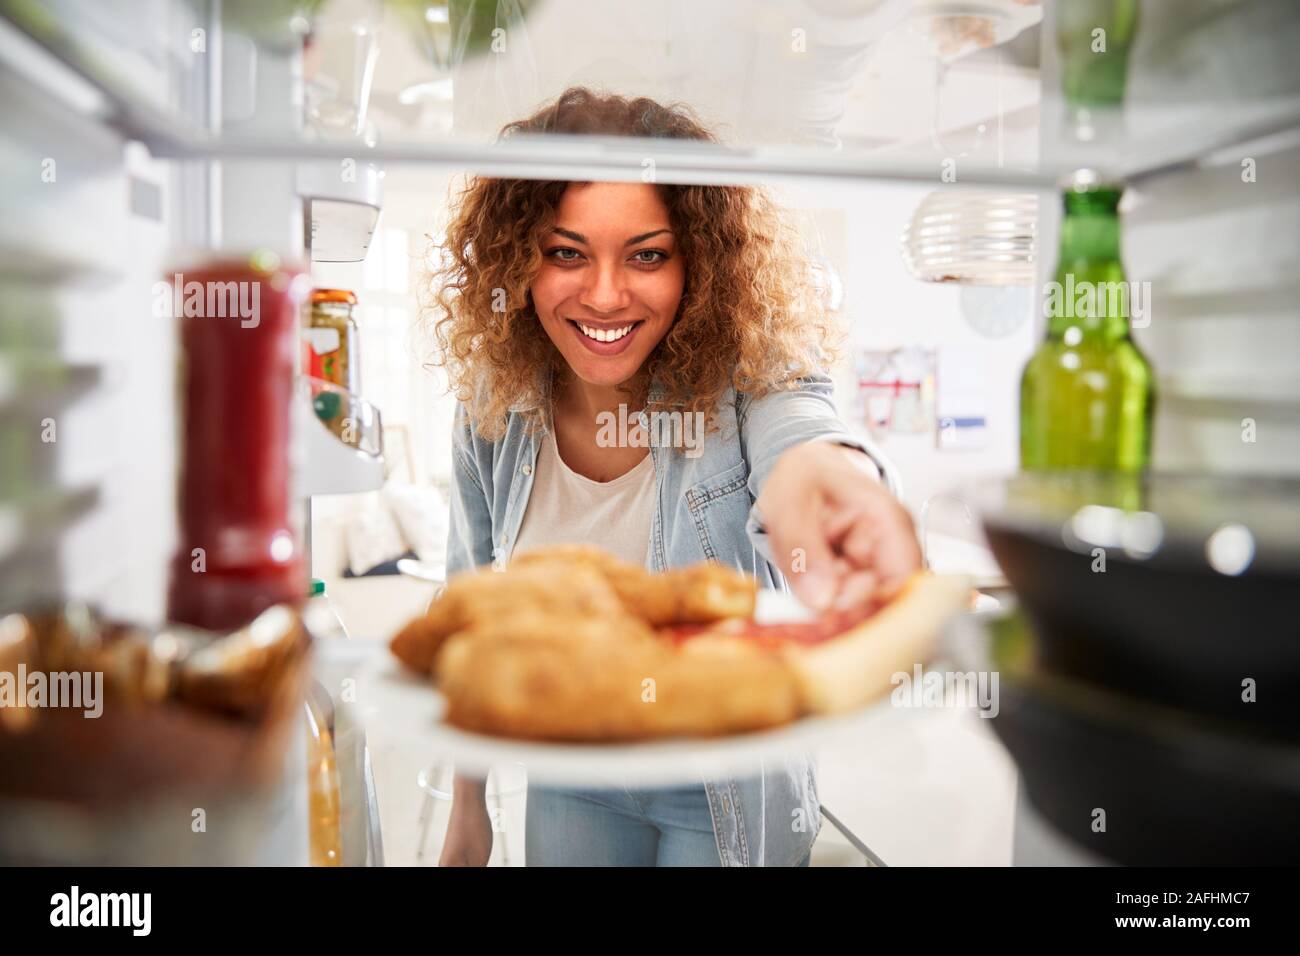 Vista dall'interno del frigorifero riempito con cibo da asporto come donna apre le porte Foto Stock